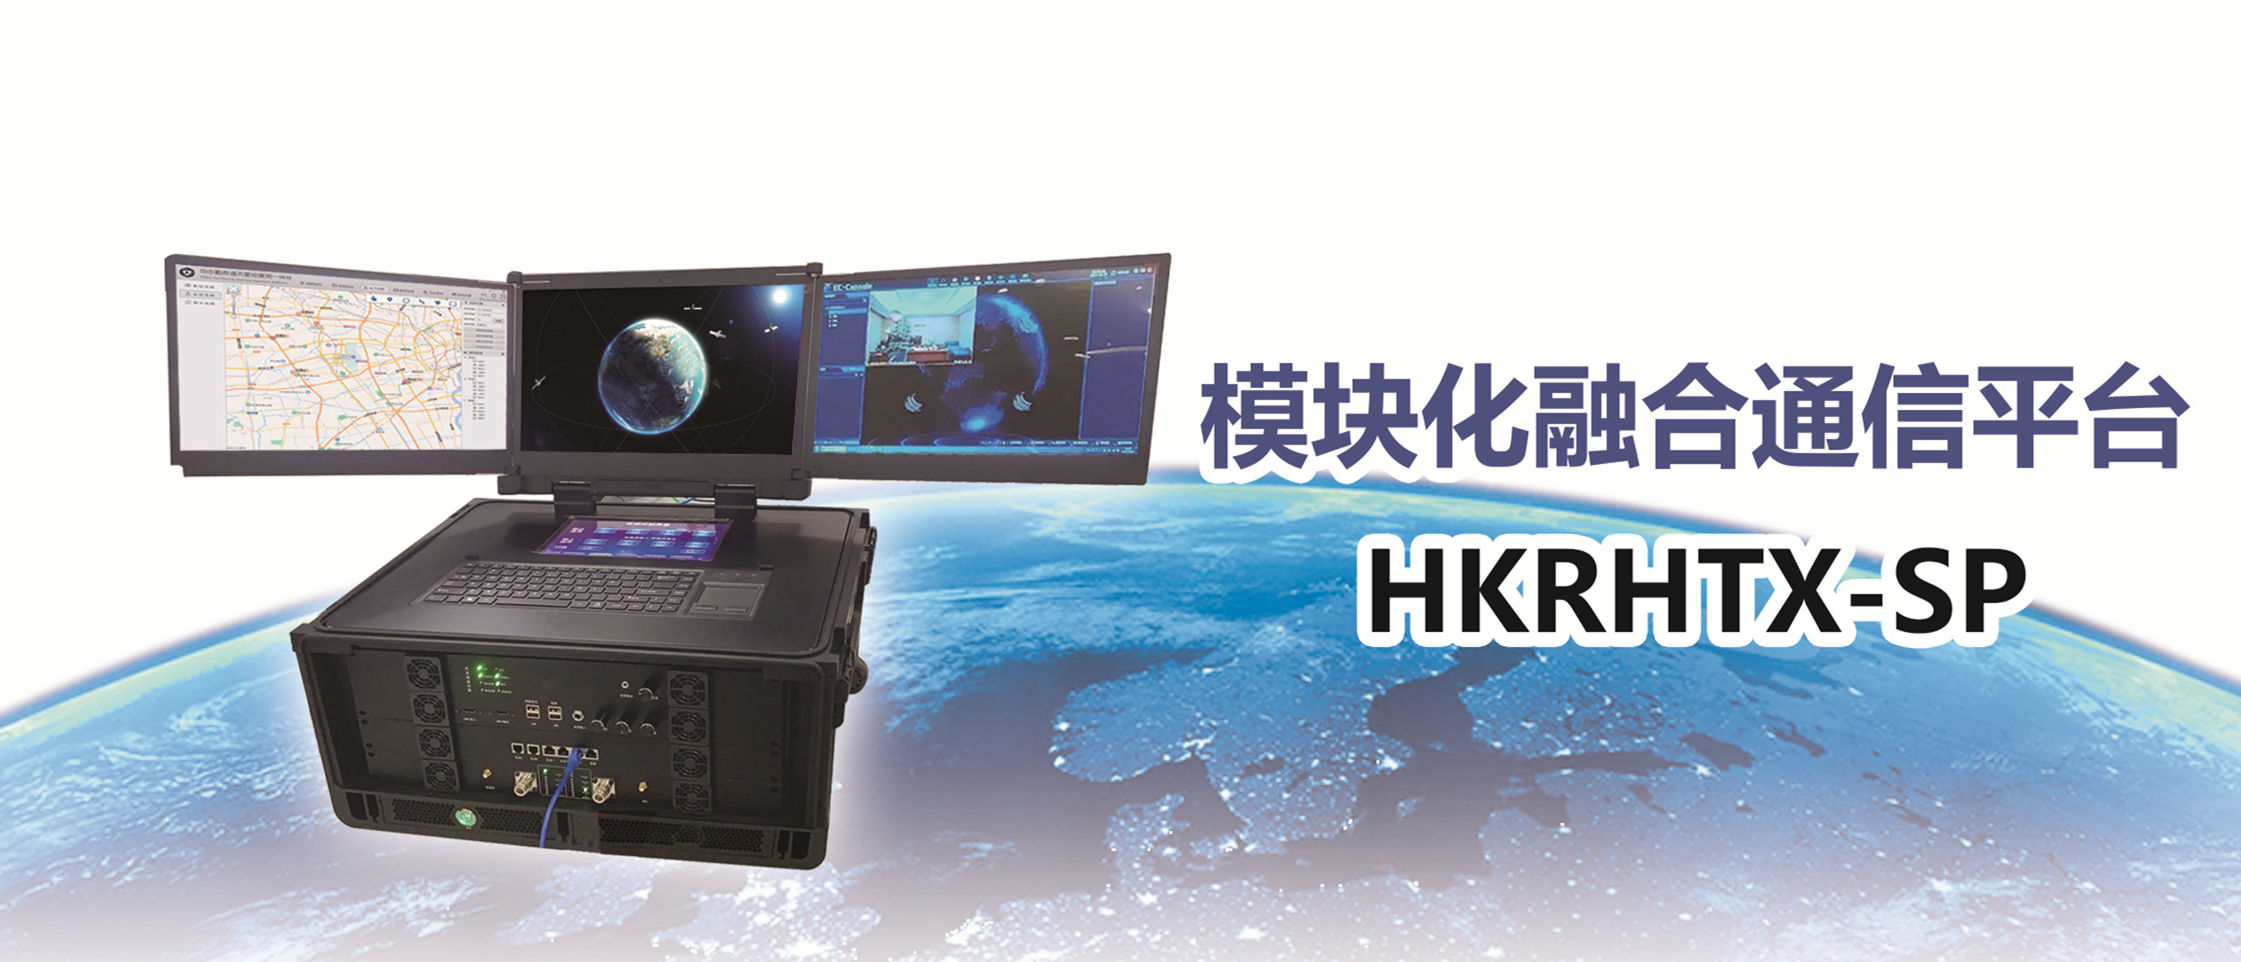 便携通信调度平台-HKRHTXSP